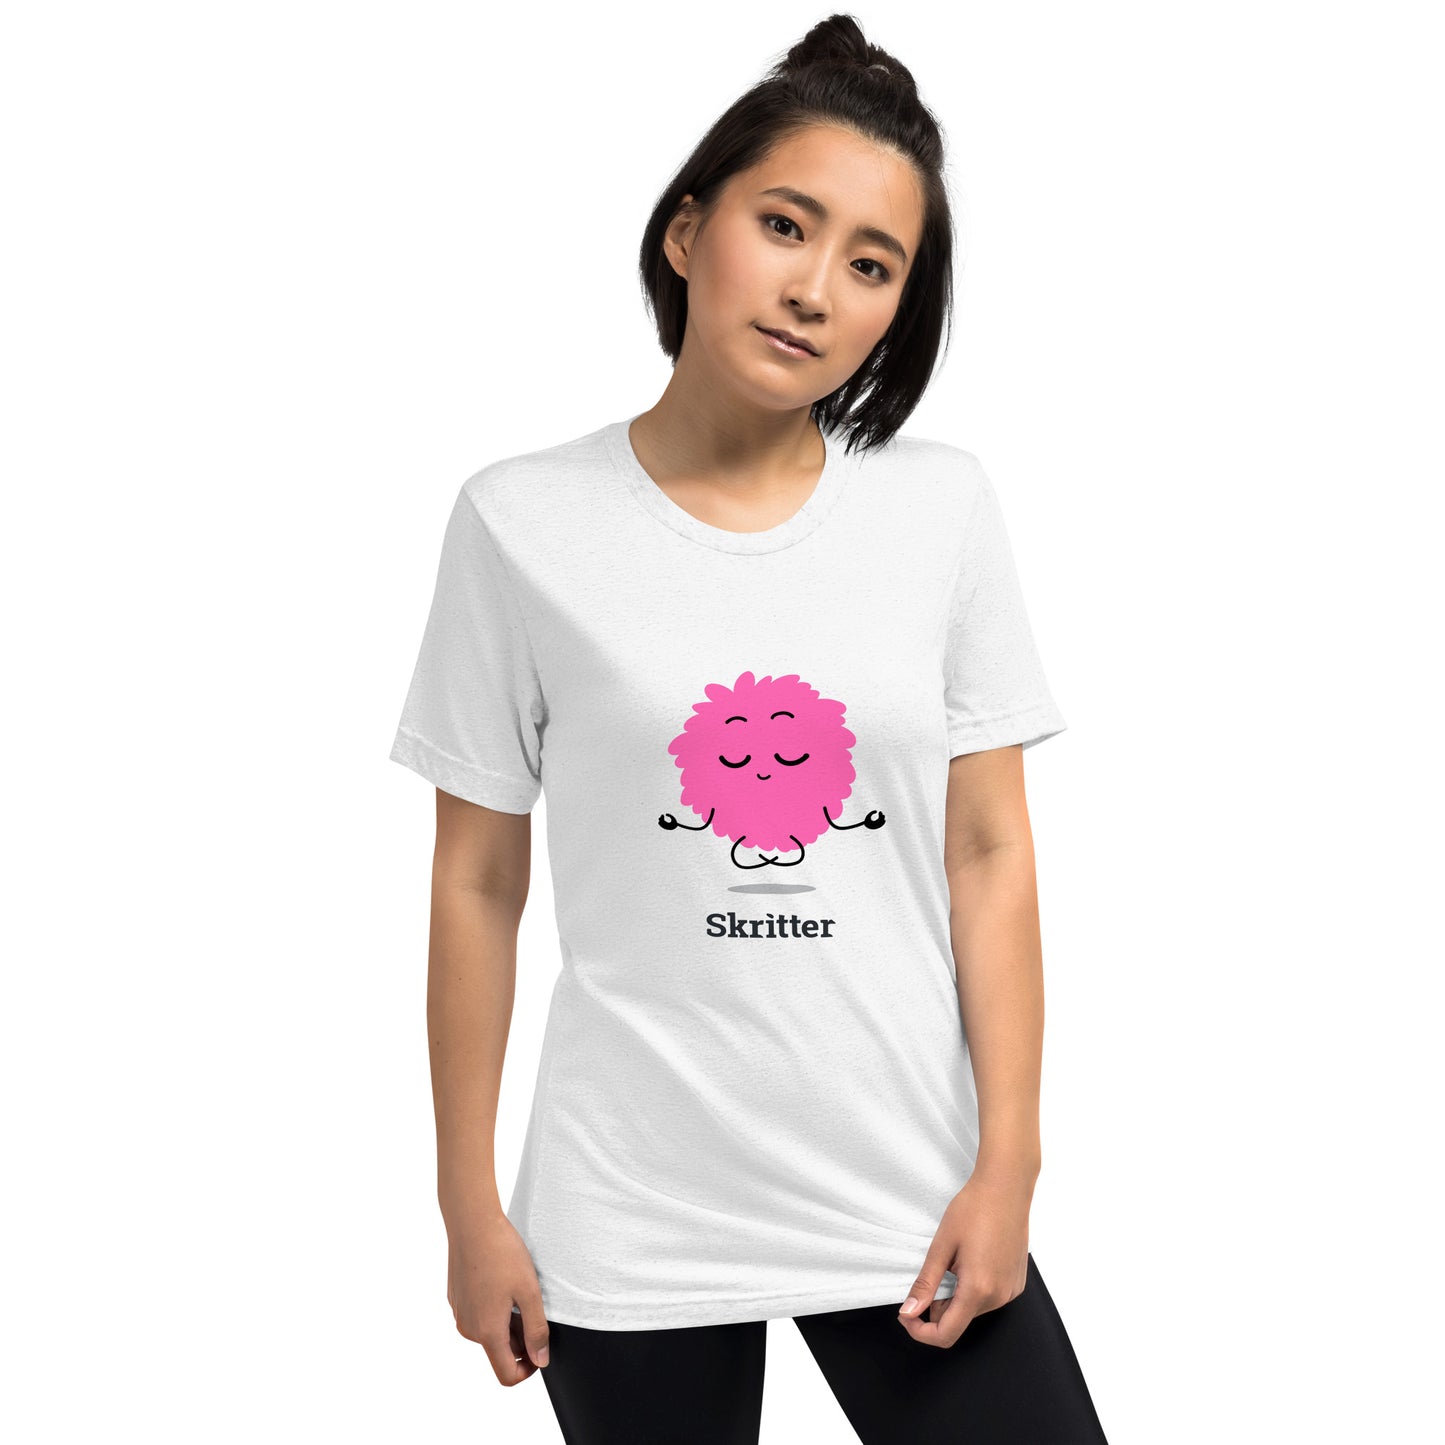 Short sleeve uni-sex calm critter t-shirt